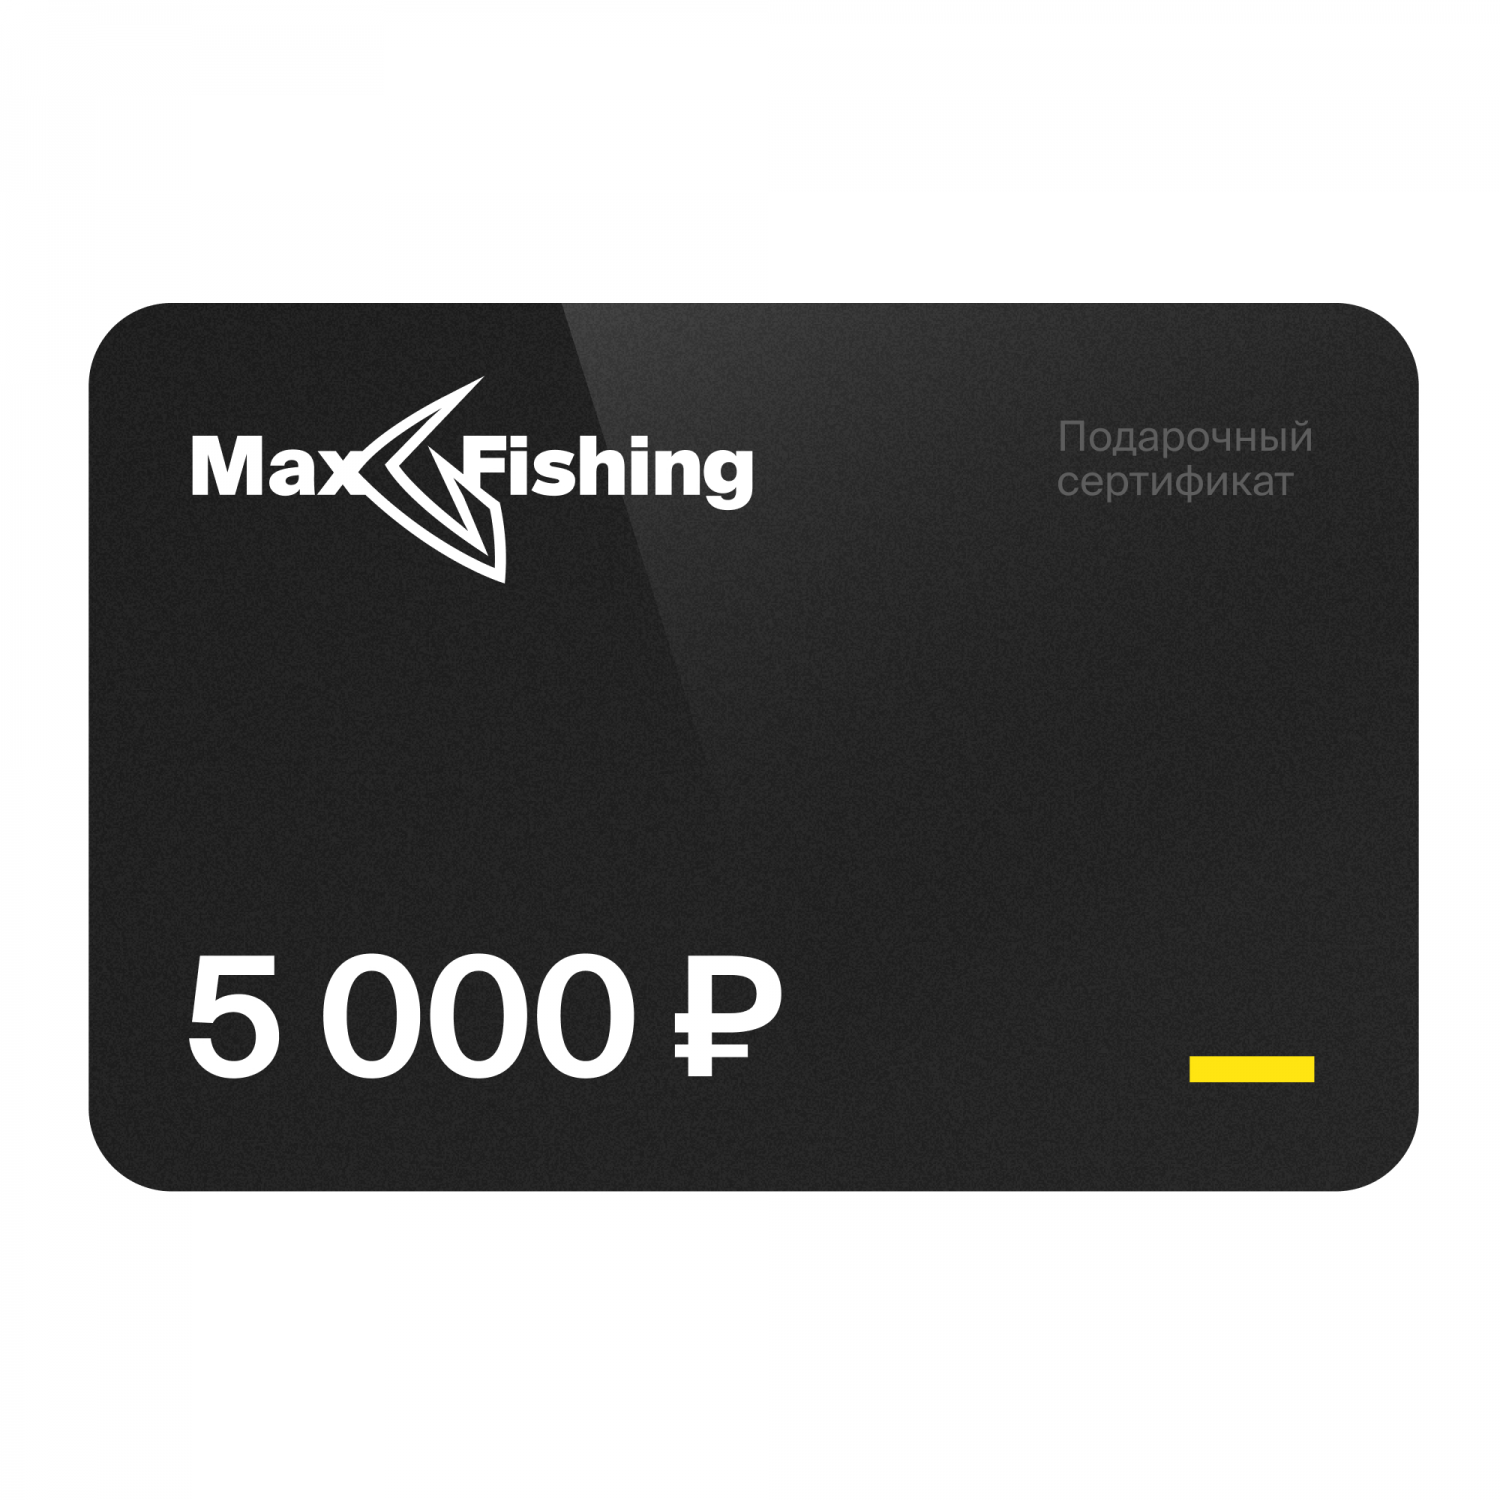 Подарочный сертификат MaxFishing 5 000 ₽ подарочный сертификат maxfishing 5